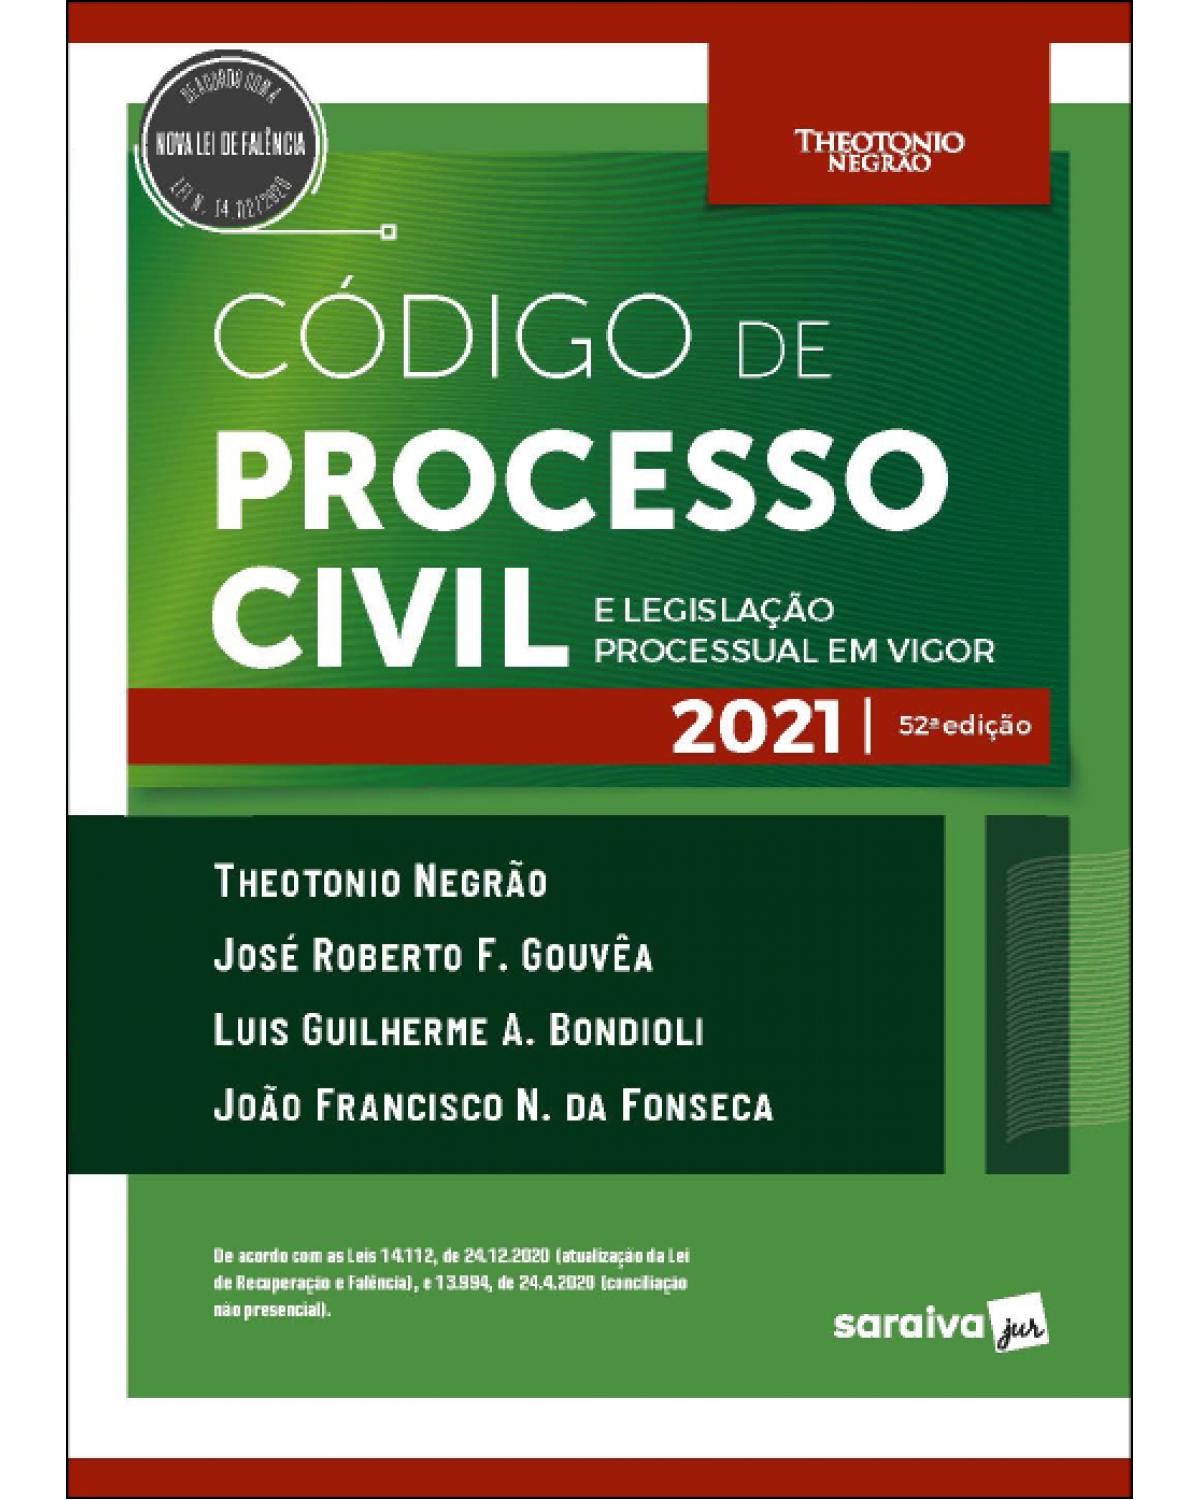 Código de processo civil e legislação processual em vigor - 52ª Edição | 2021